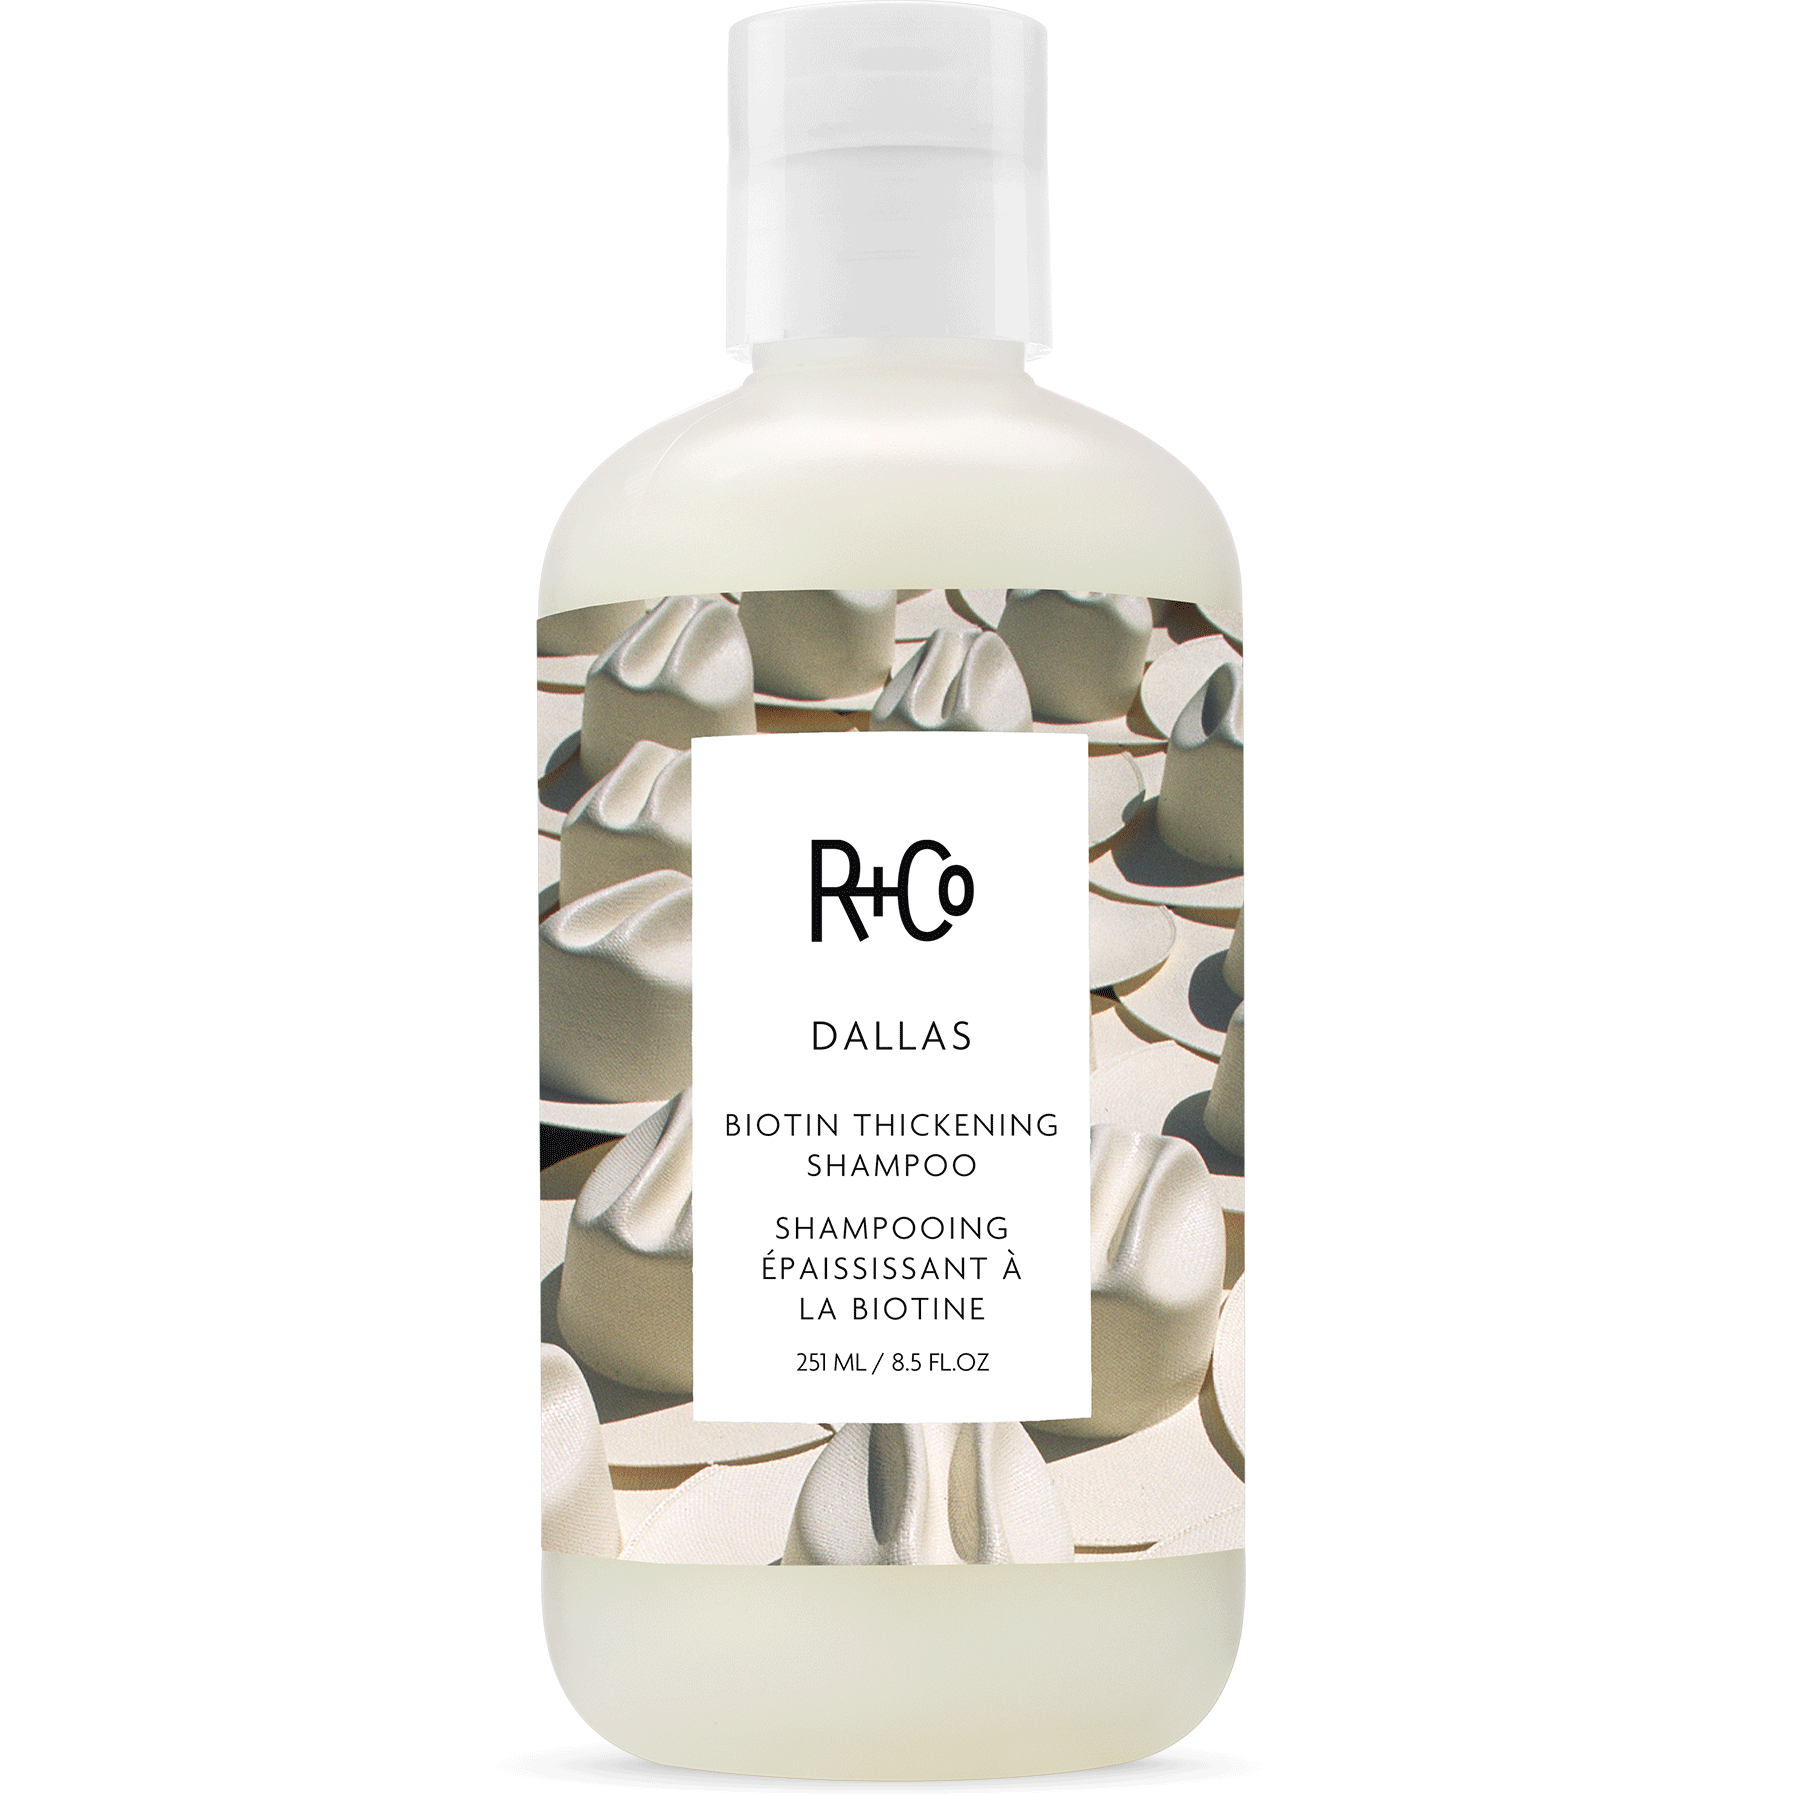 R+CO Dallas Biotin Thickening Shampoo (251 ml)